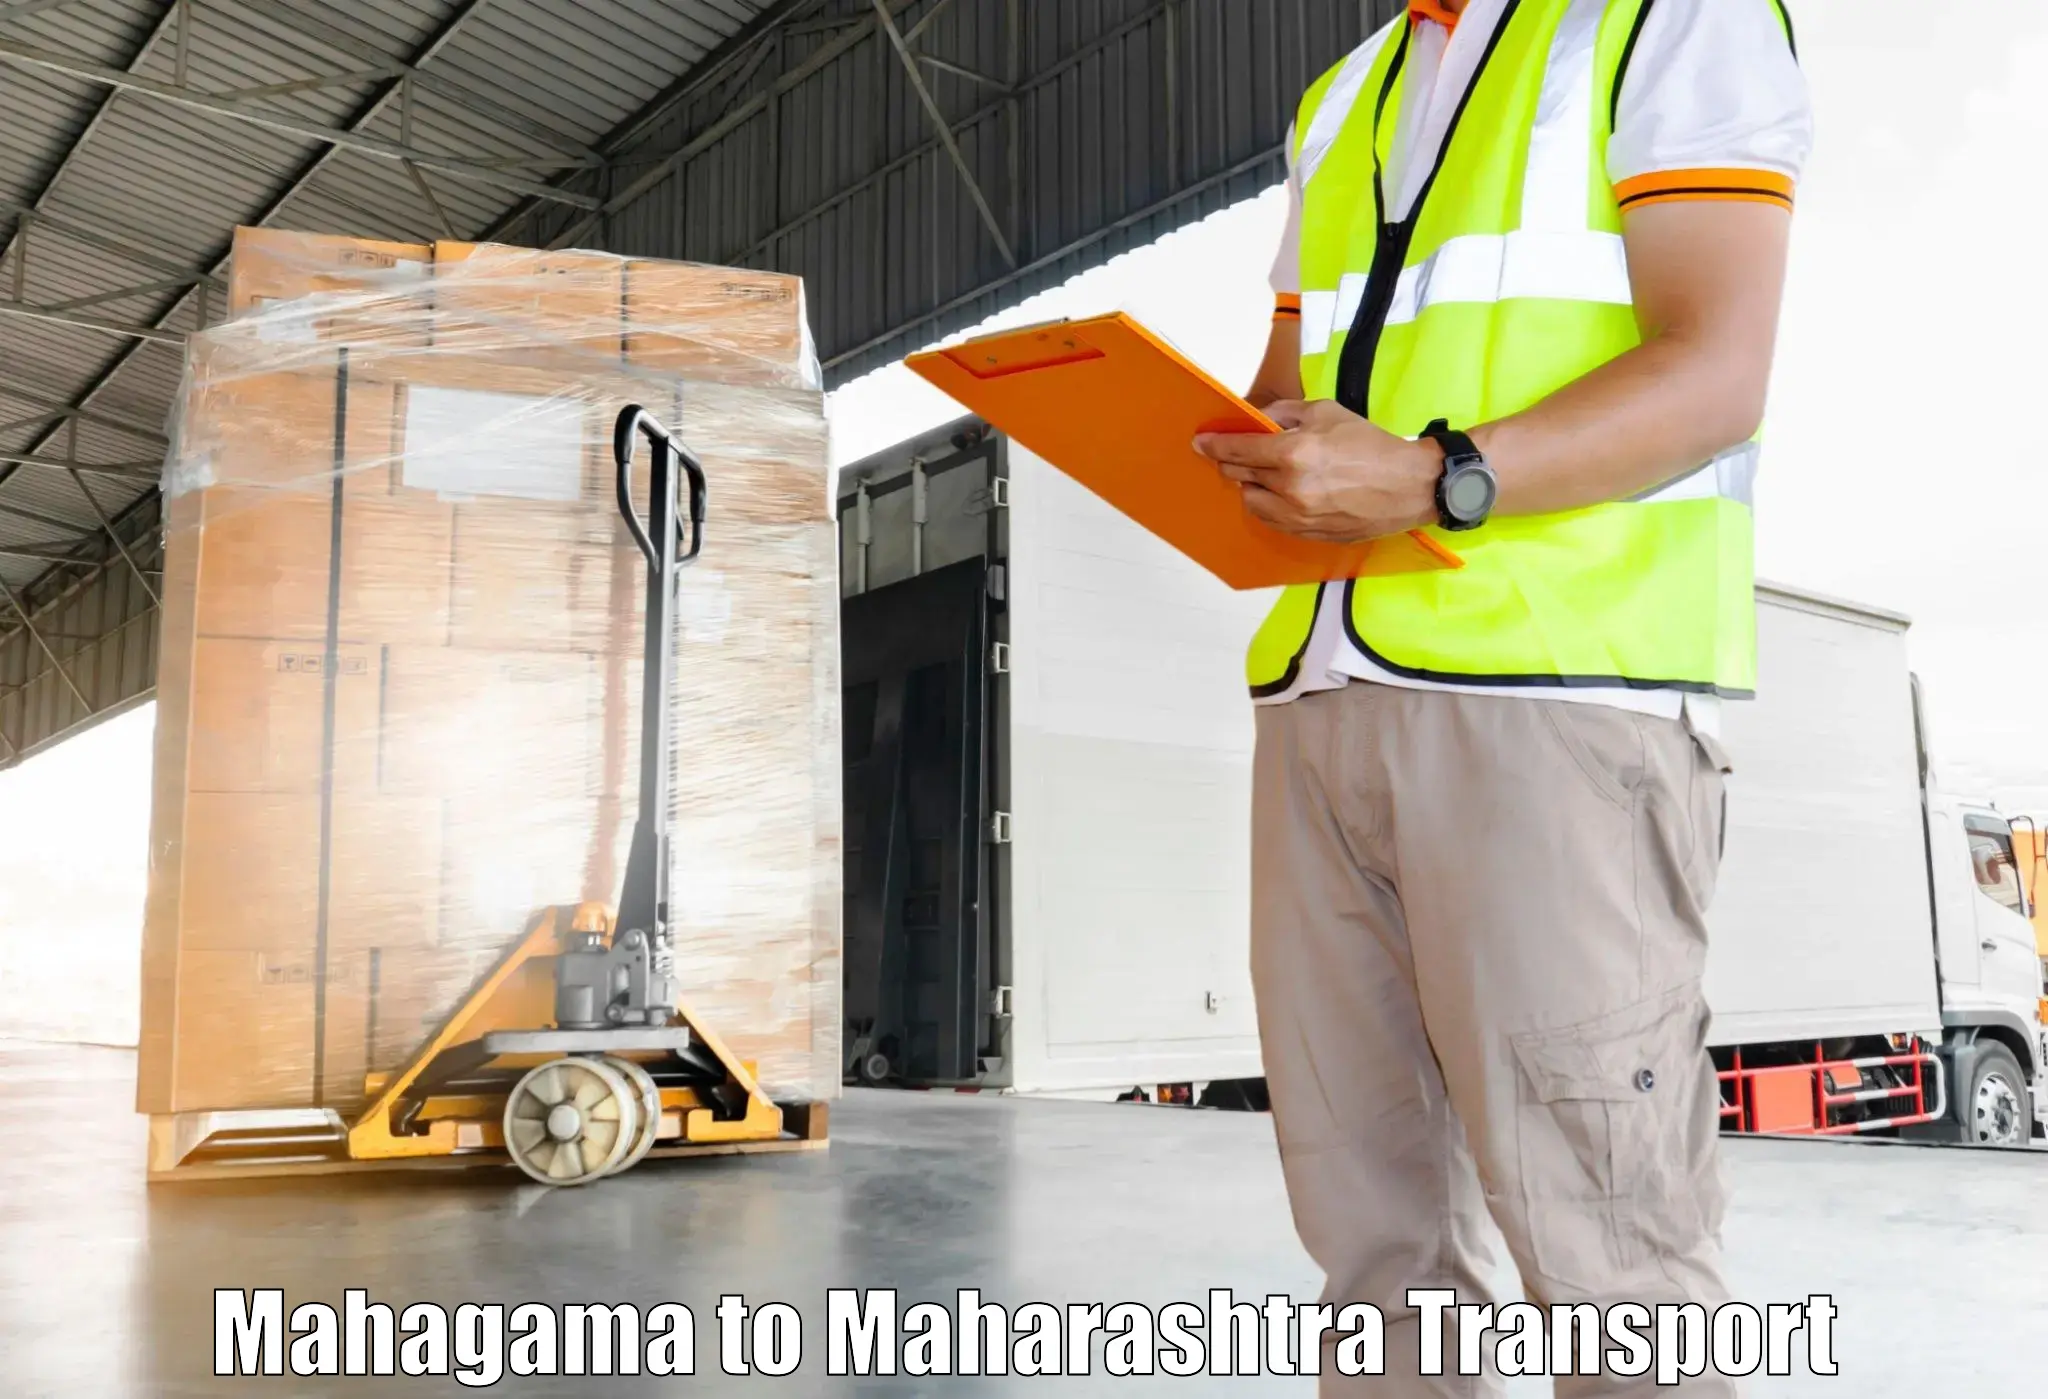 Container transport service Mahagama to Maharashtra